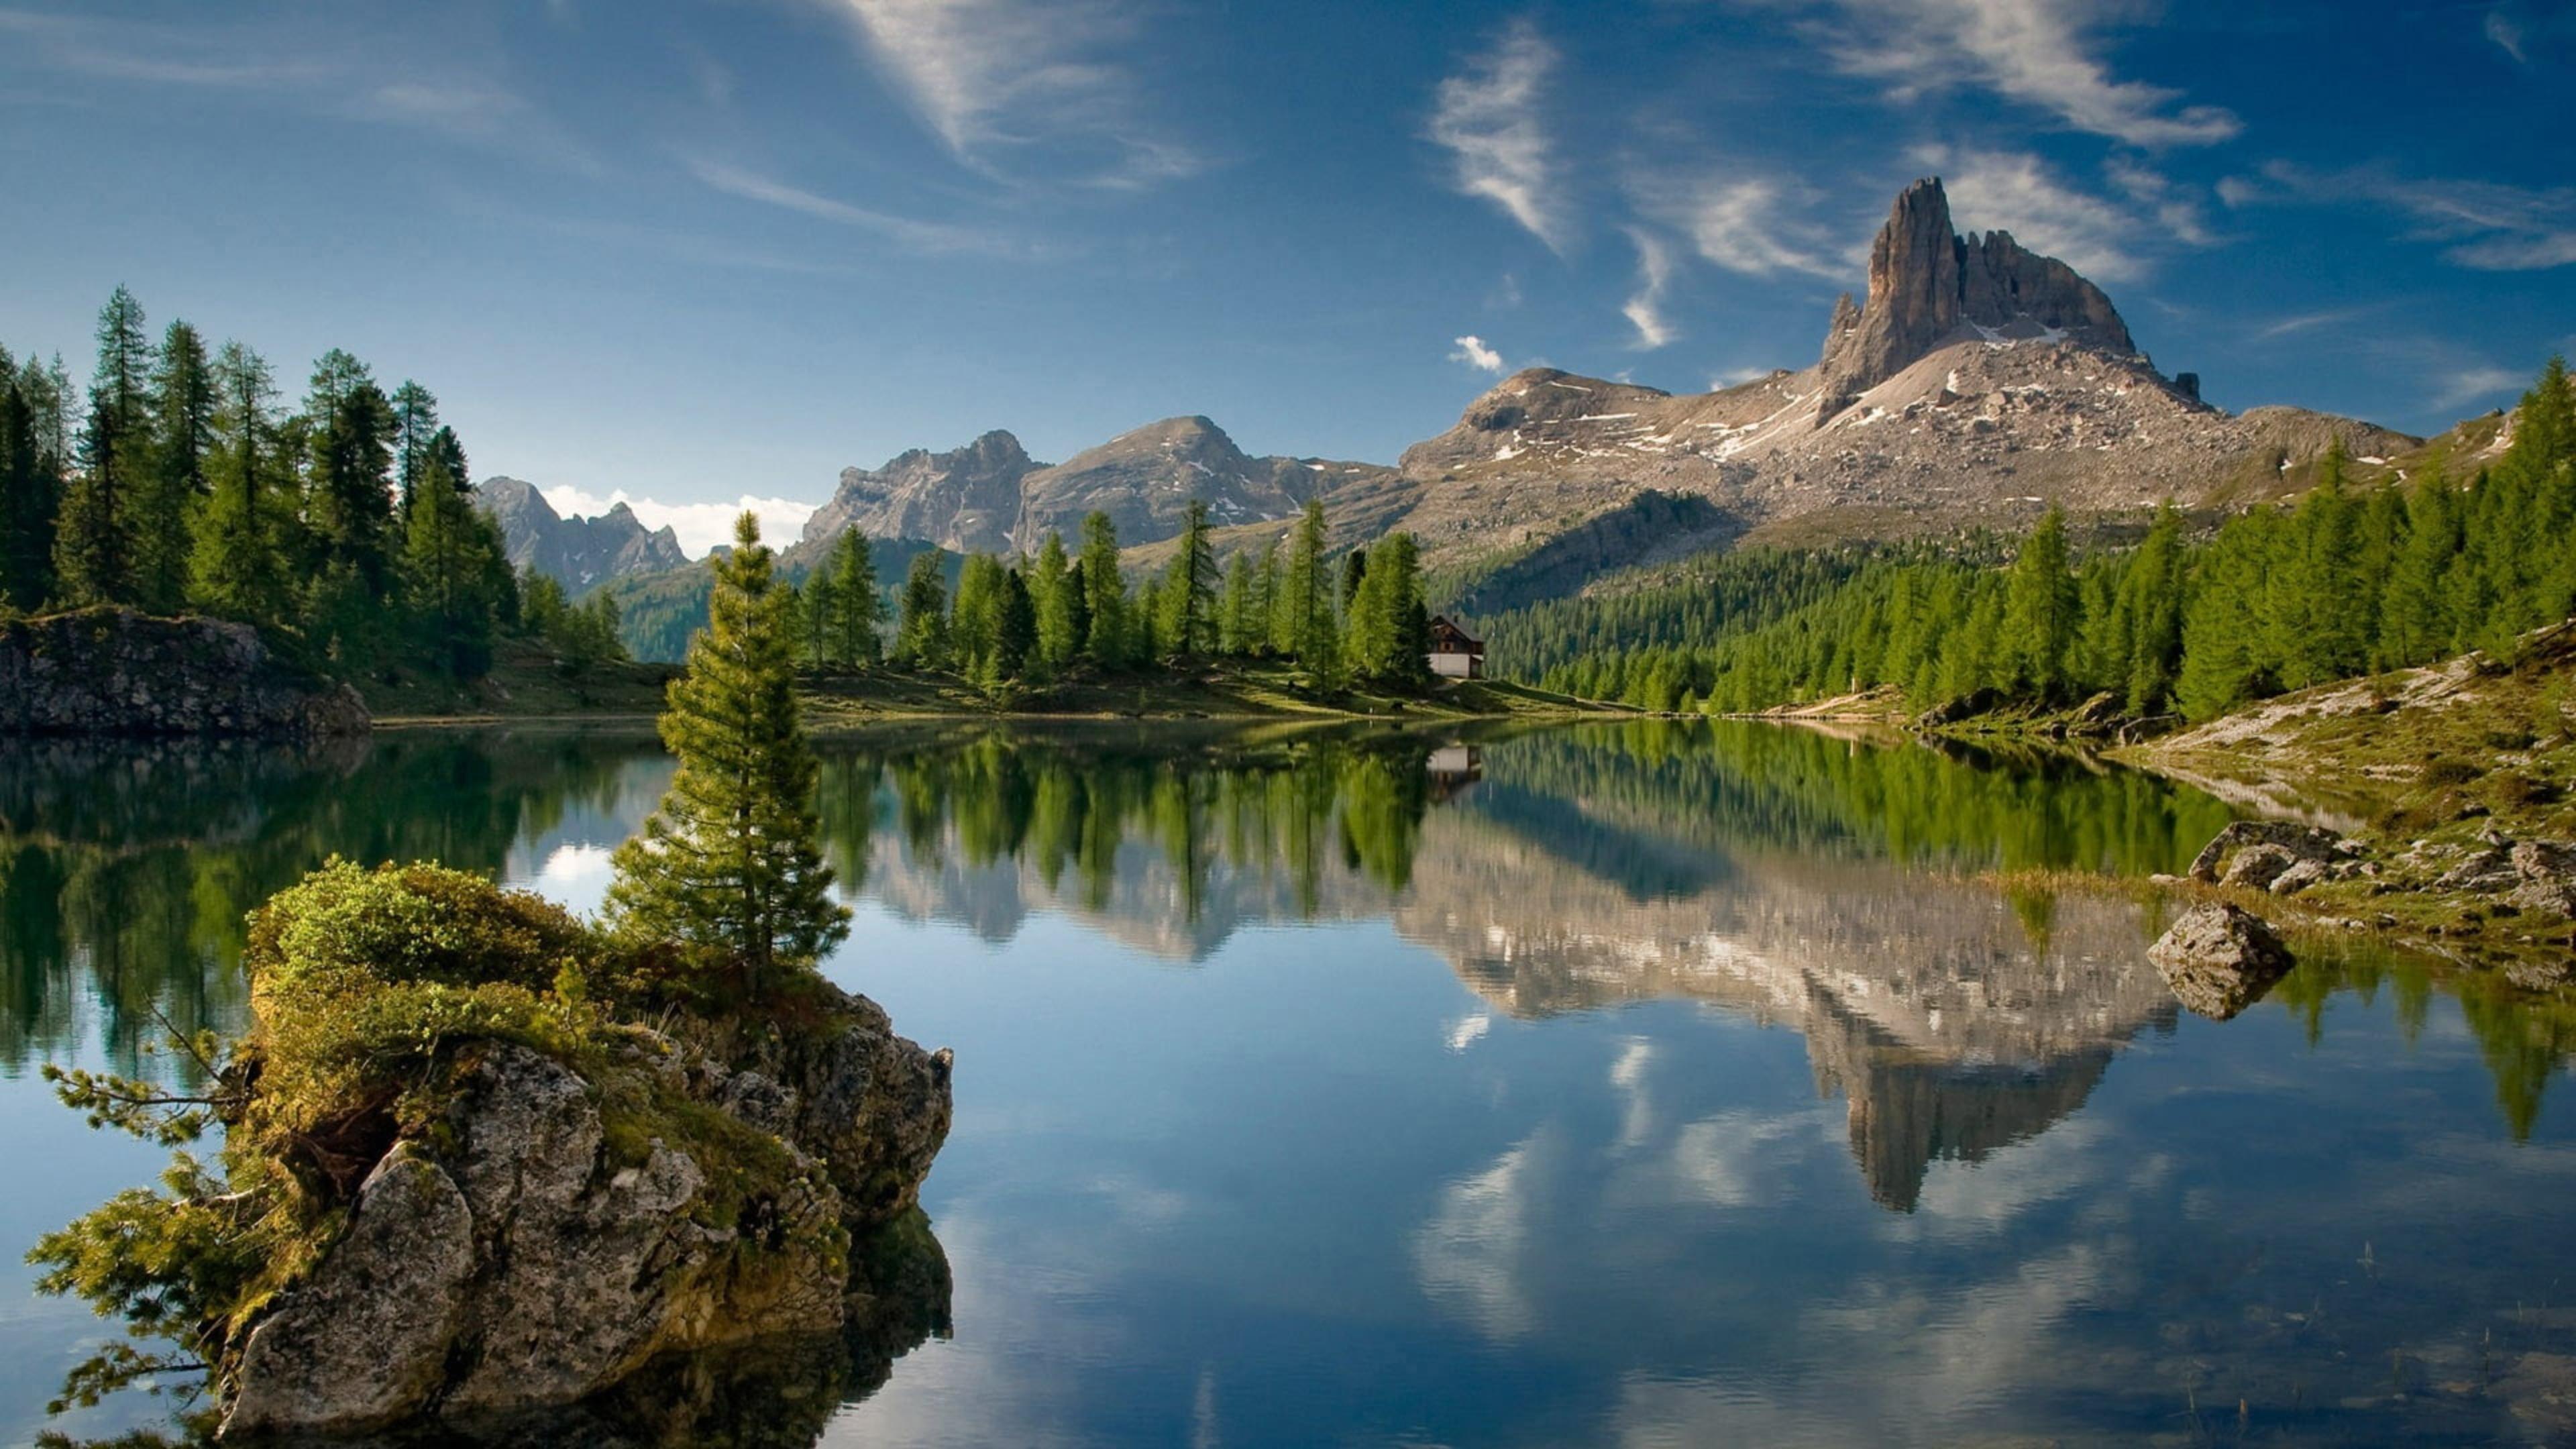 3840 x 2160 · jpeg - Mountain With Lake Stunning Bing 4K Wallpaper - ZeeOii